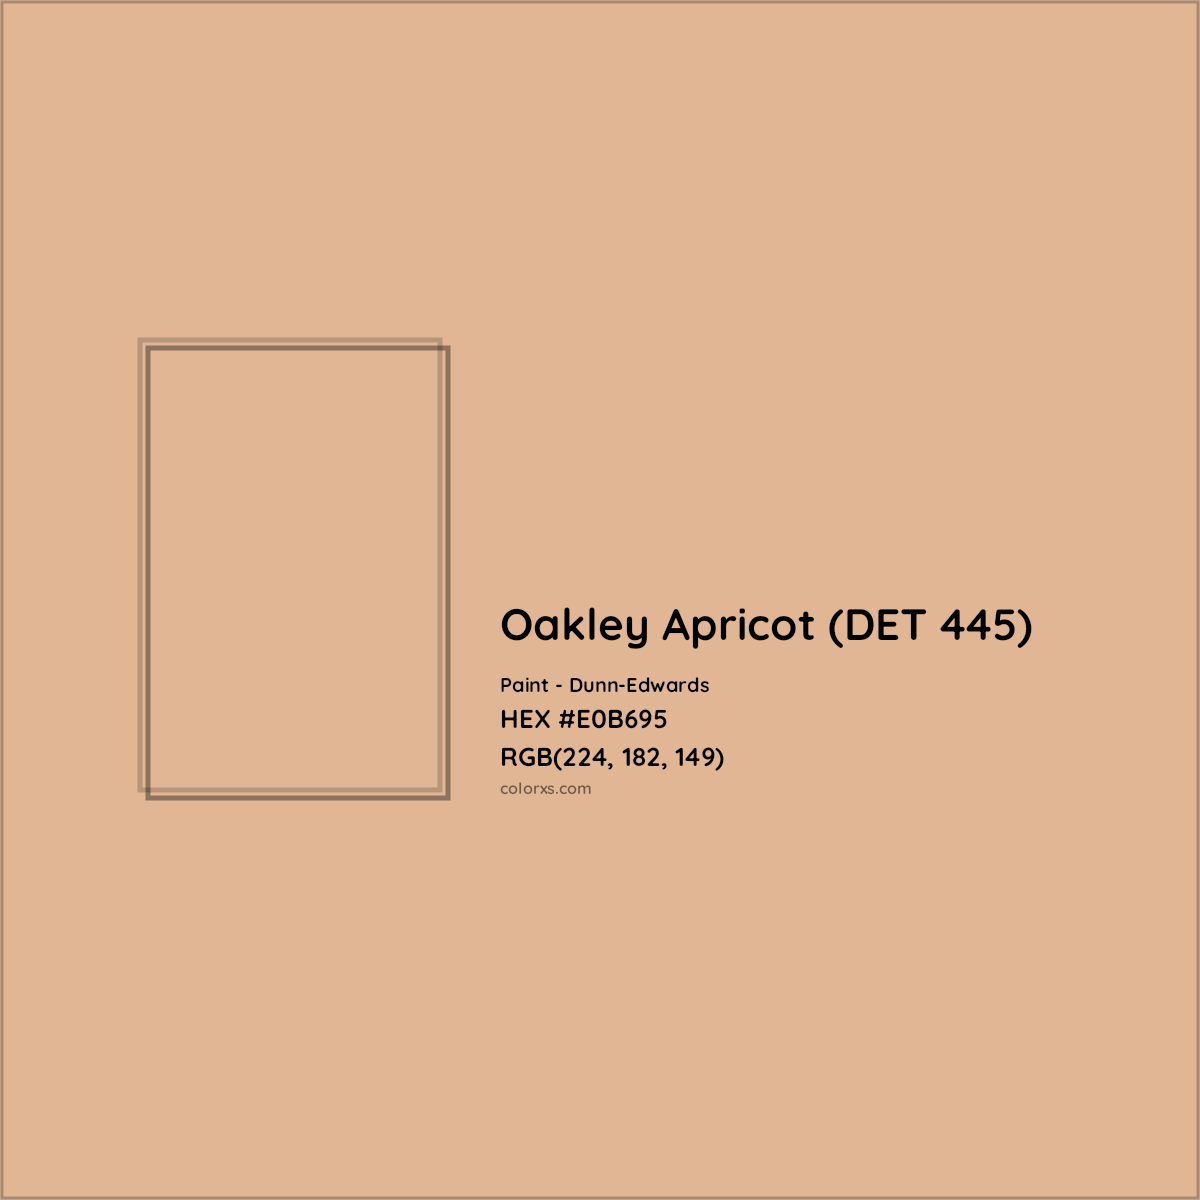 HEX #E0B695 Oakley Apricot (DET 445) Paint Dunn-Edwards - Color Code